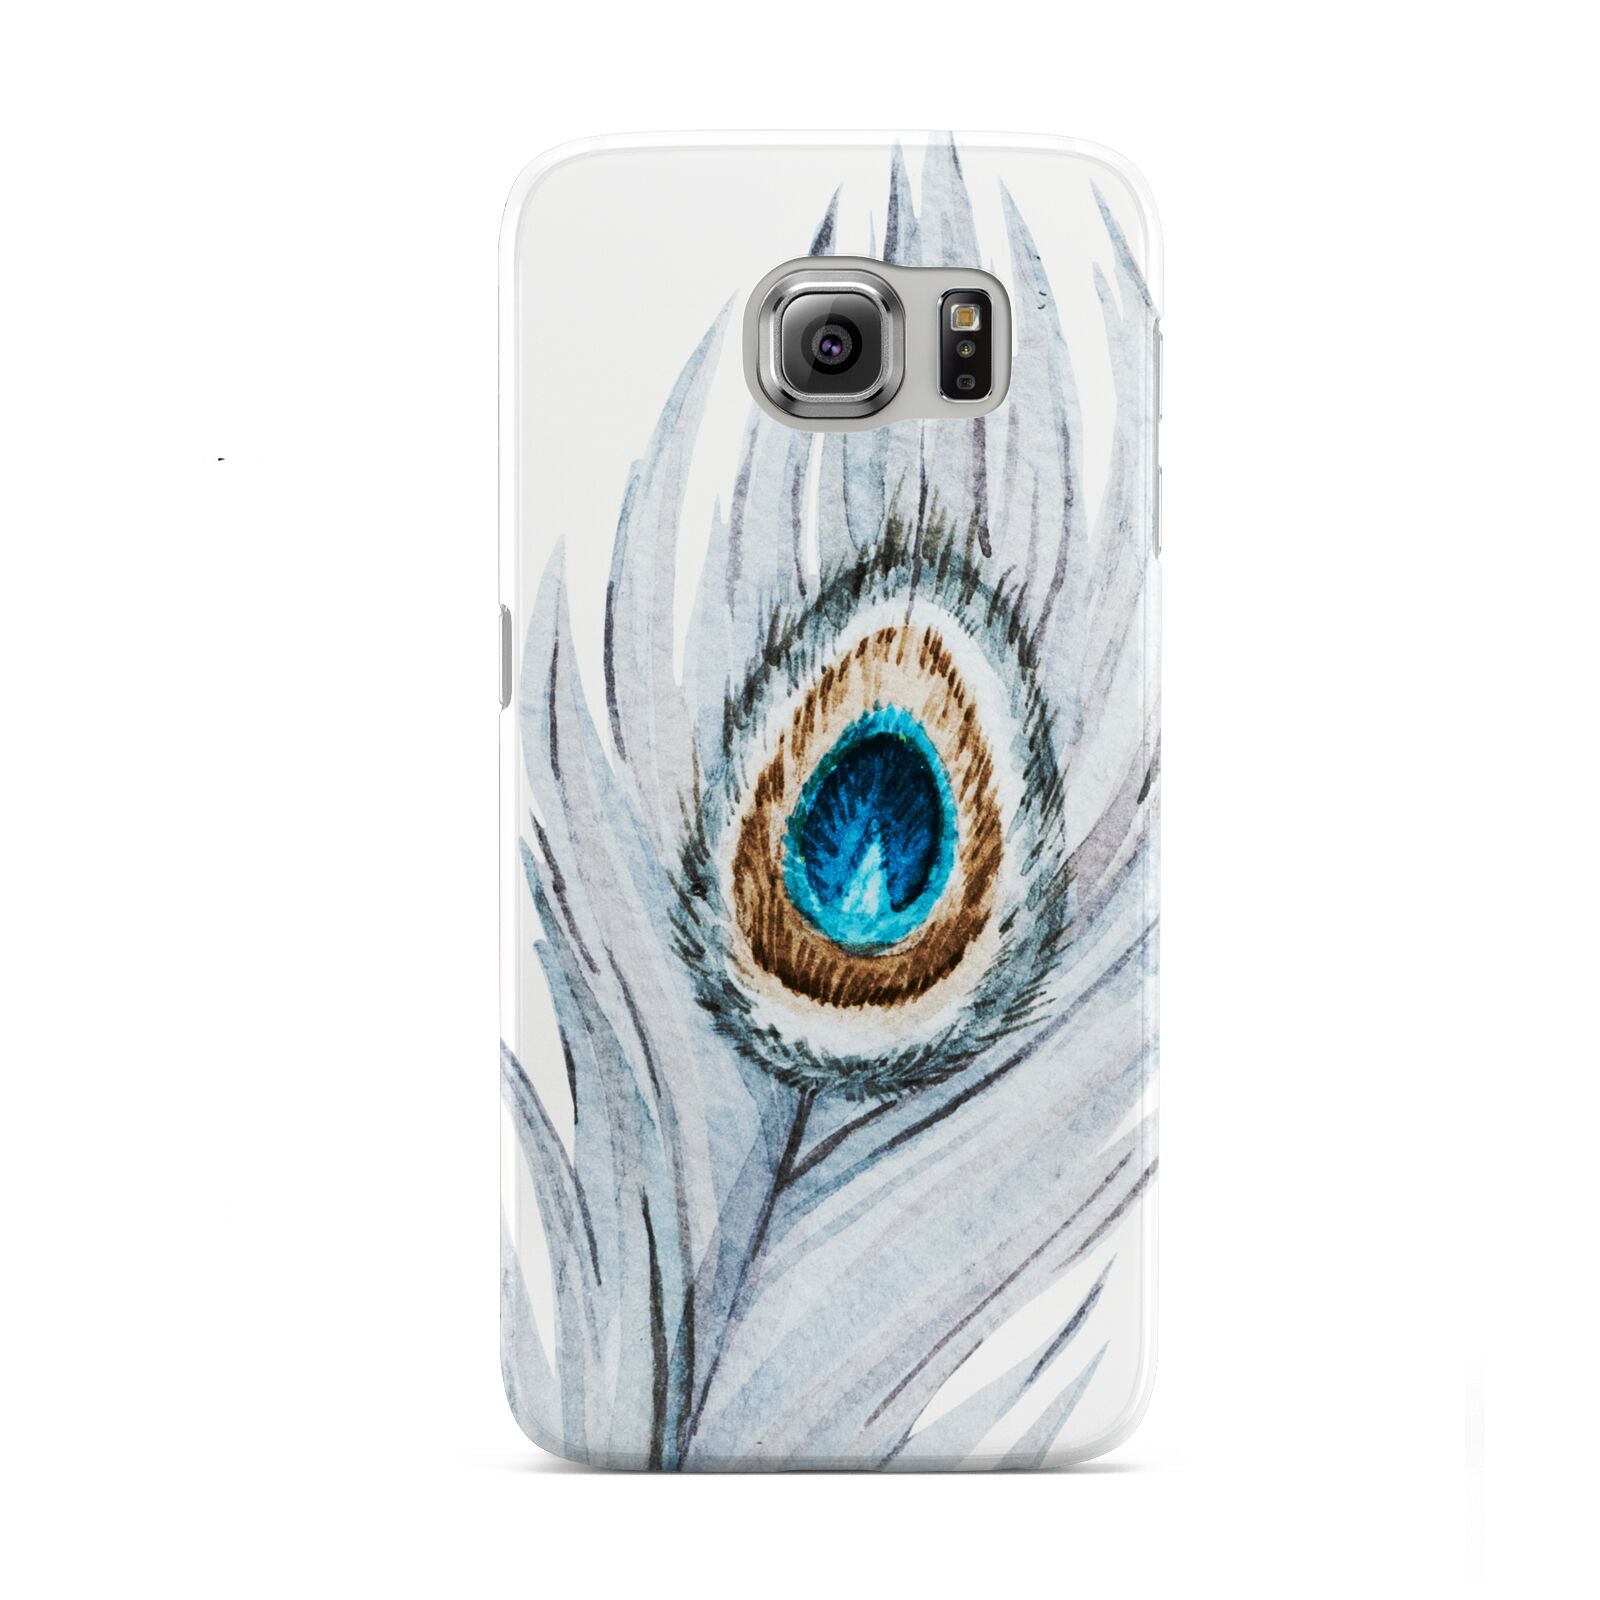 Peacock Samsung Galaxy S6 Case